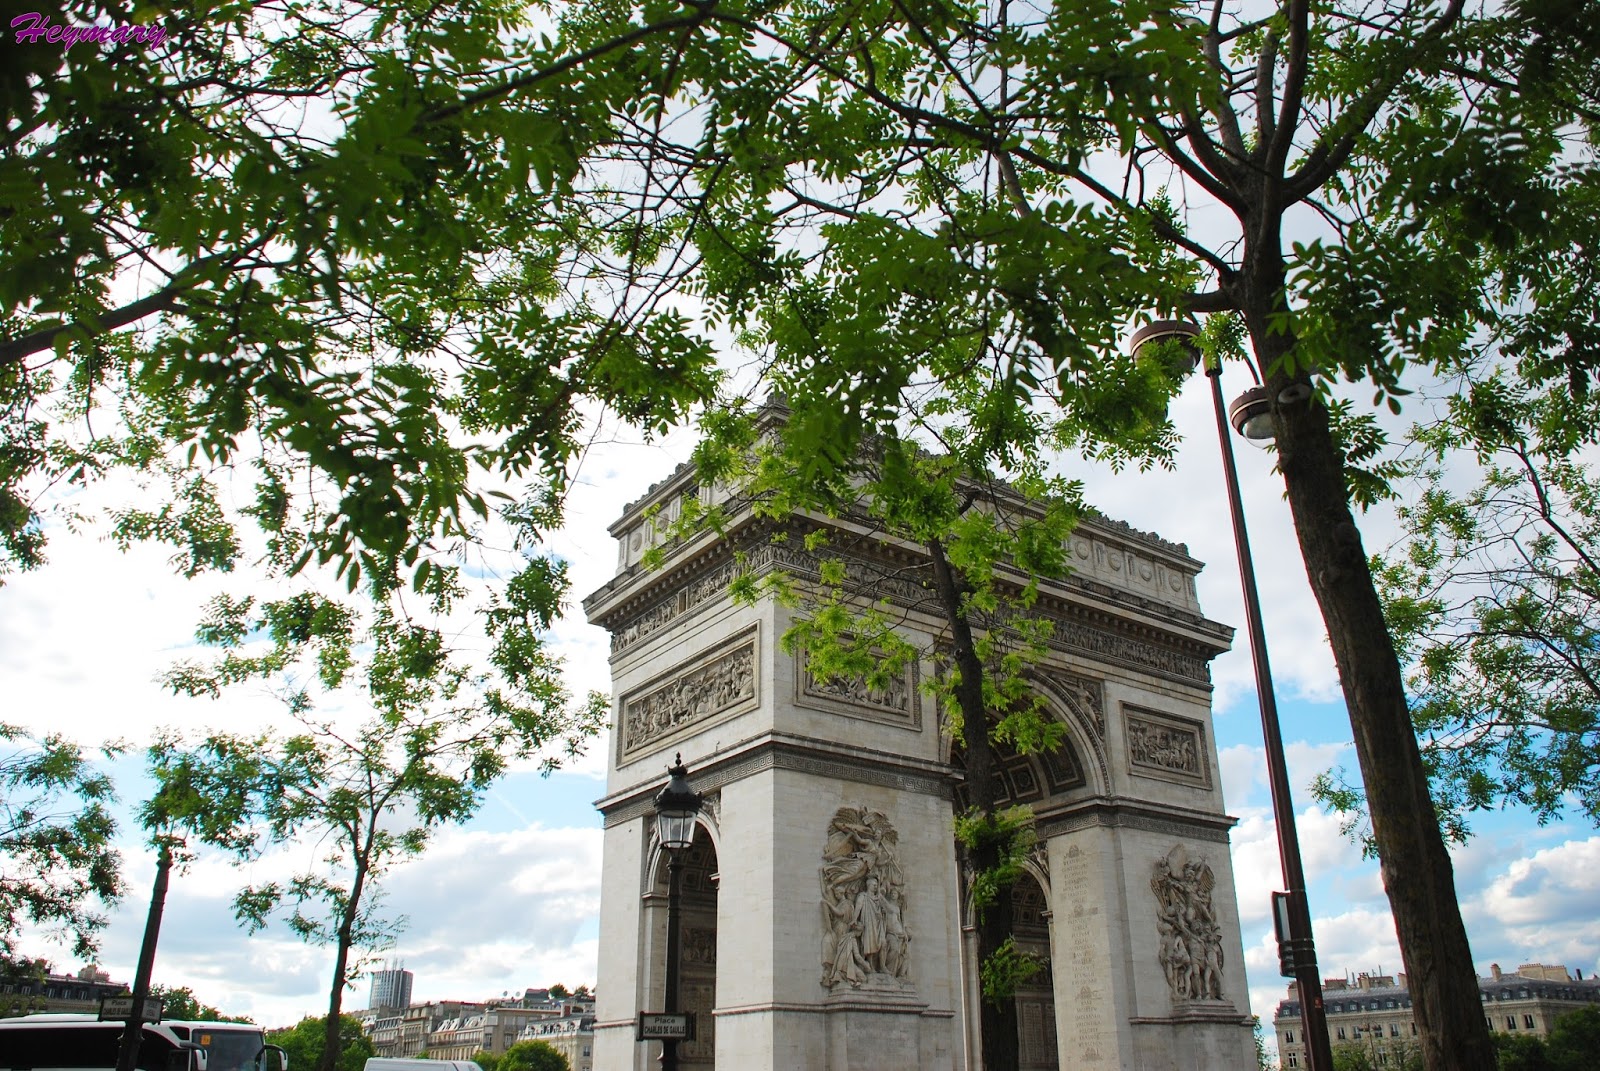 巴黎凱旋門2017/05/20 巴黎戴高樂廣場中央，紀念拿破崙1805年打敗俄奧聯軍的勝利，1806年興建，其間因拿破崙被推翻而停工，於1830年波旁王朝推翻斷斷續續經過30年於1836年7月29日落成。 巴黎的12條大街都以凱旋門為中心，向四周放射